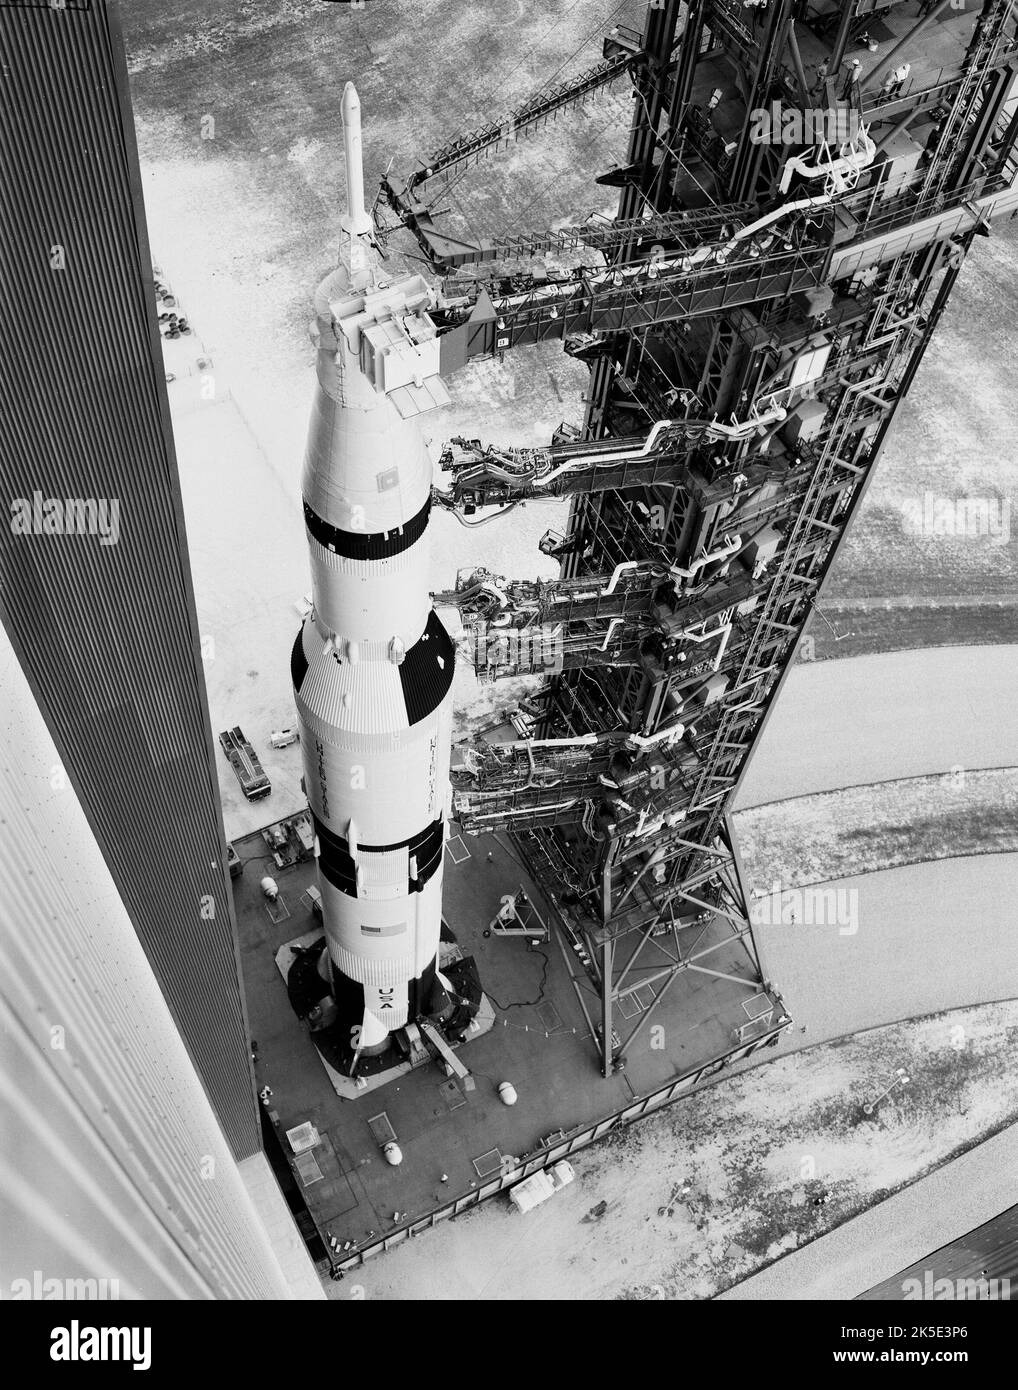 Apollo 6 startete am 4. April 1968 vom Kennedy Space Center der NASA. Hier ist der Apollo 6-Trägerrakete abgebildet, der Kennedy's Vehicle Assembly Building auf dem Transporter verlässt und auf die Startrampe 39-A steuert Die unbemannte Mission war der letzte Qualifikationsflug des Saturn V-Trägerraketen und der Apollo-Raumsonde. Quelle: NASA Stockfoto